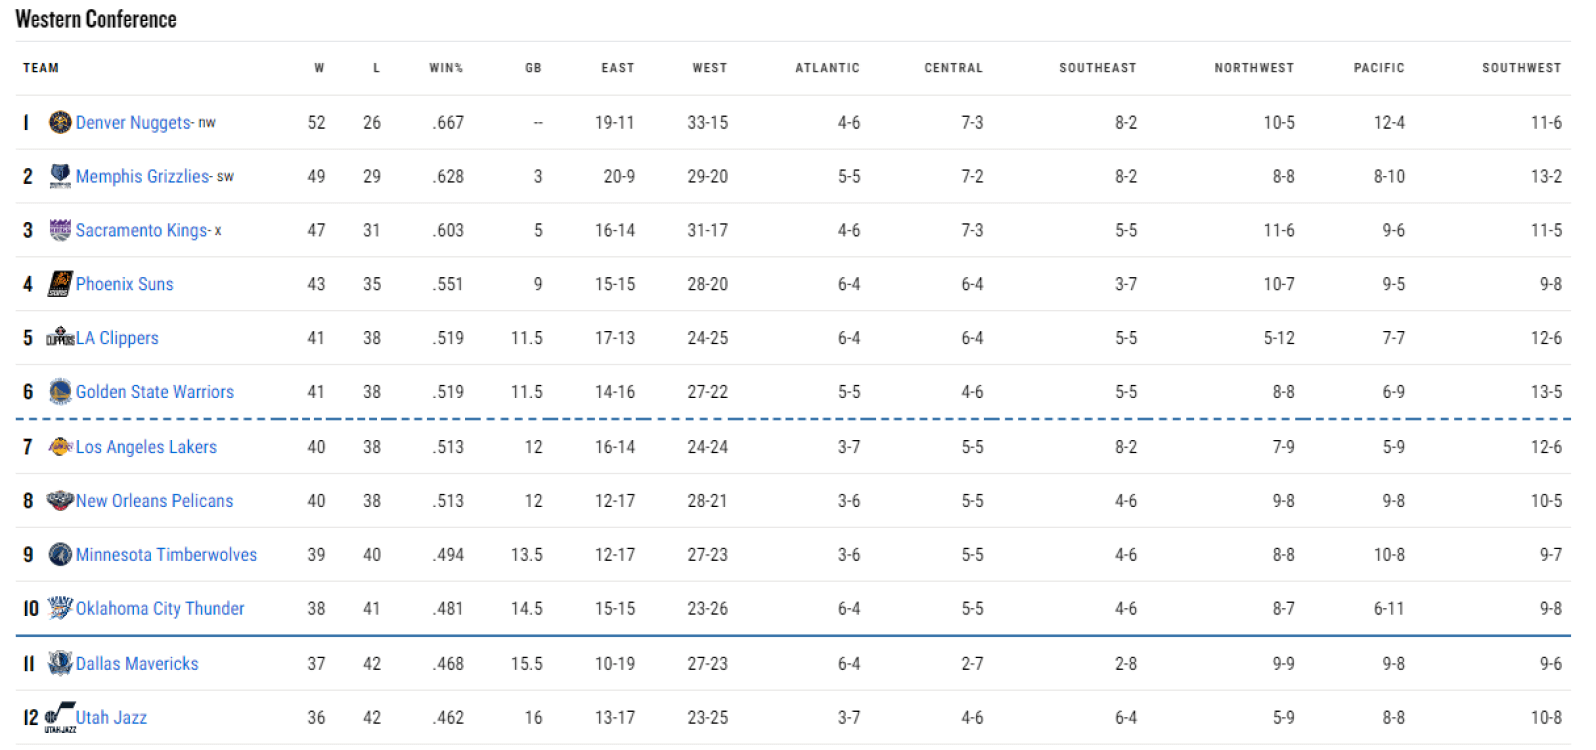 Así estaba la clasificación del Oeste a falta de una semana para el final de la liga regular. / Fuente: NBA.com